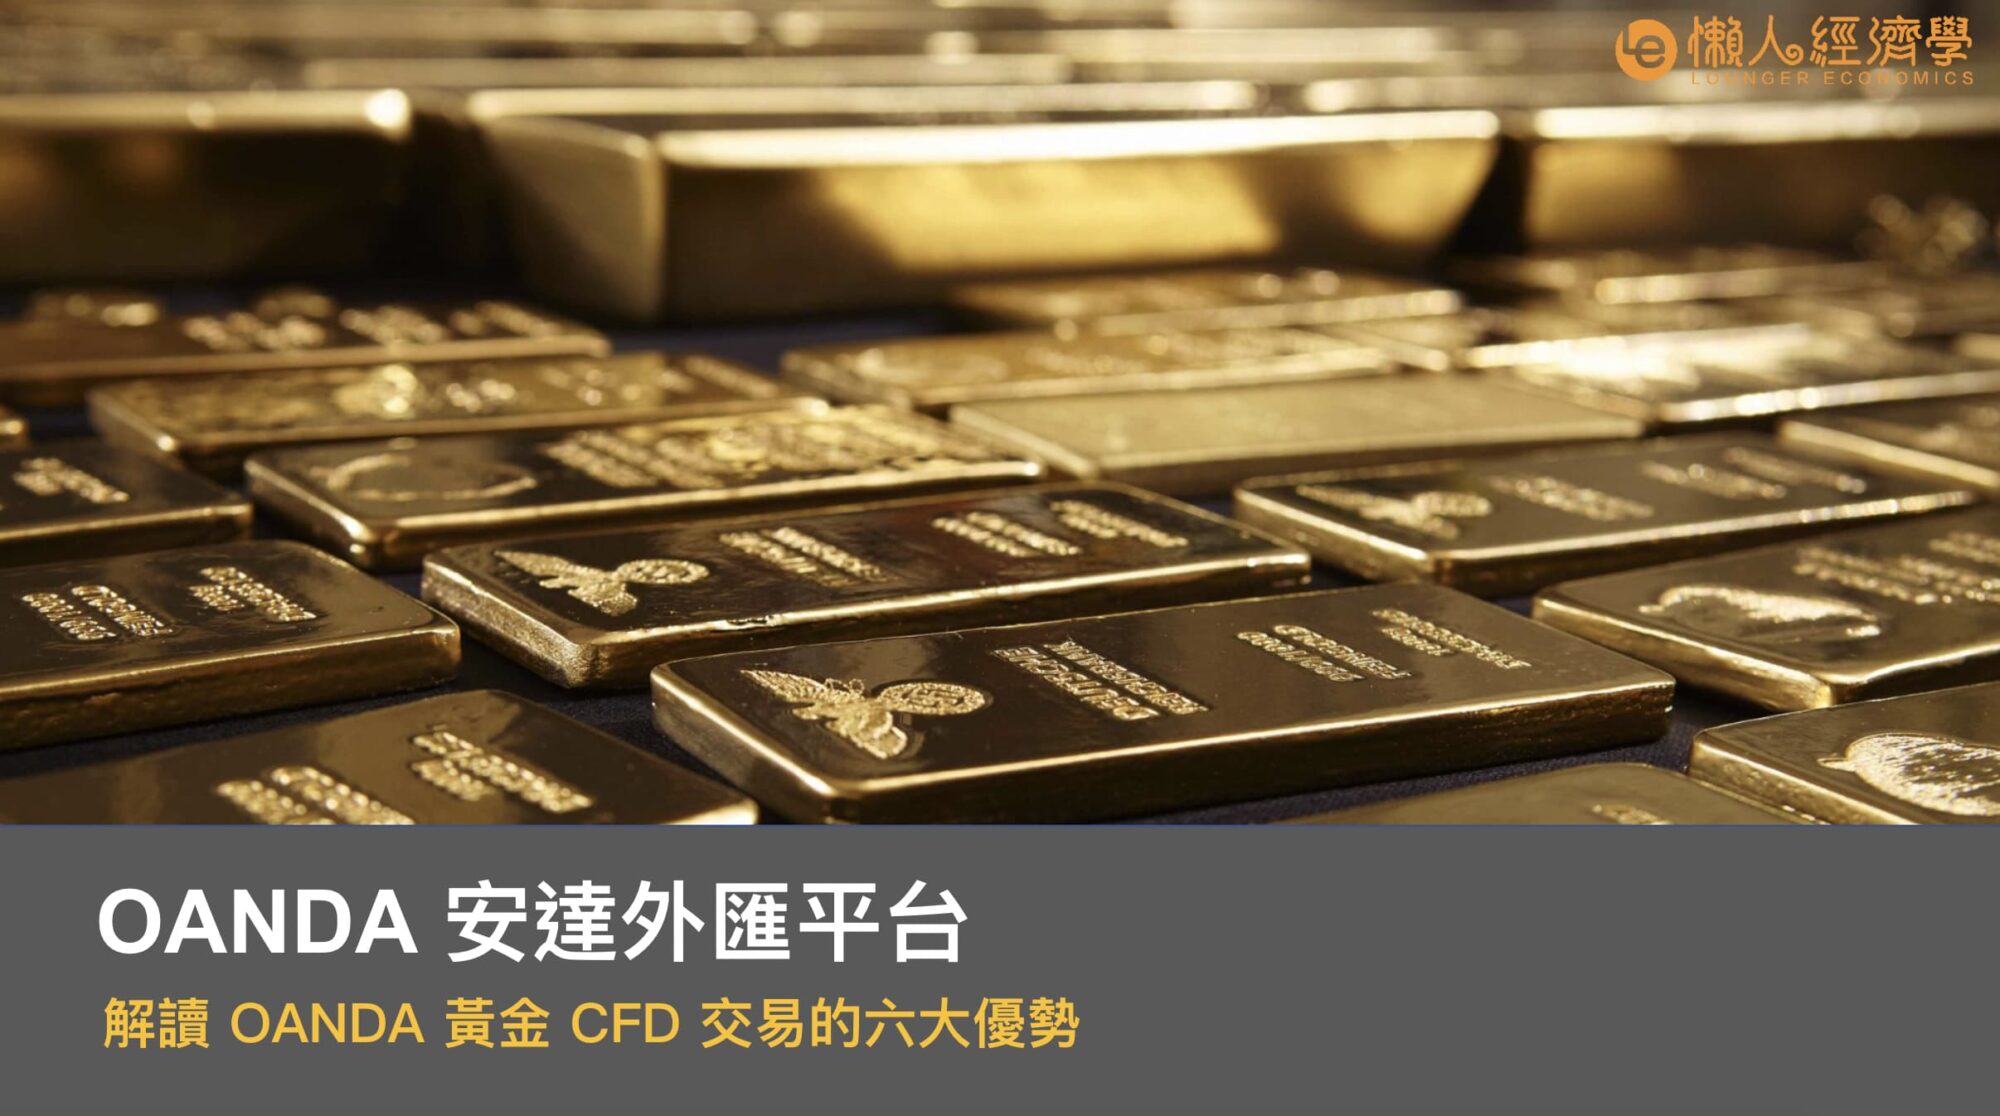 解讀 OANDA 黃金 CFD 交易的六大優勢：點差、保證金綠、價格比較頁與分析工具等